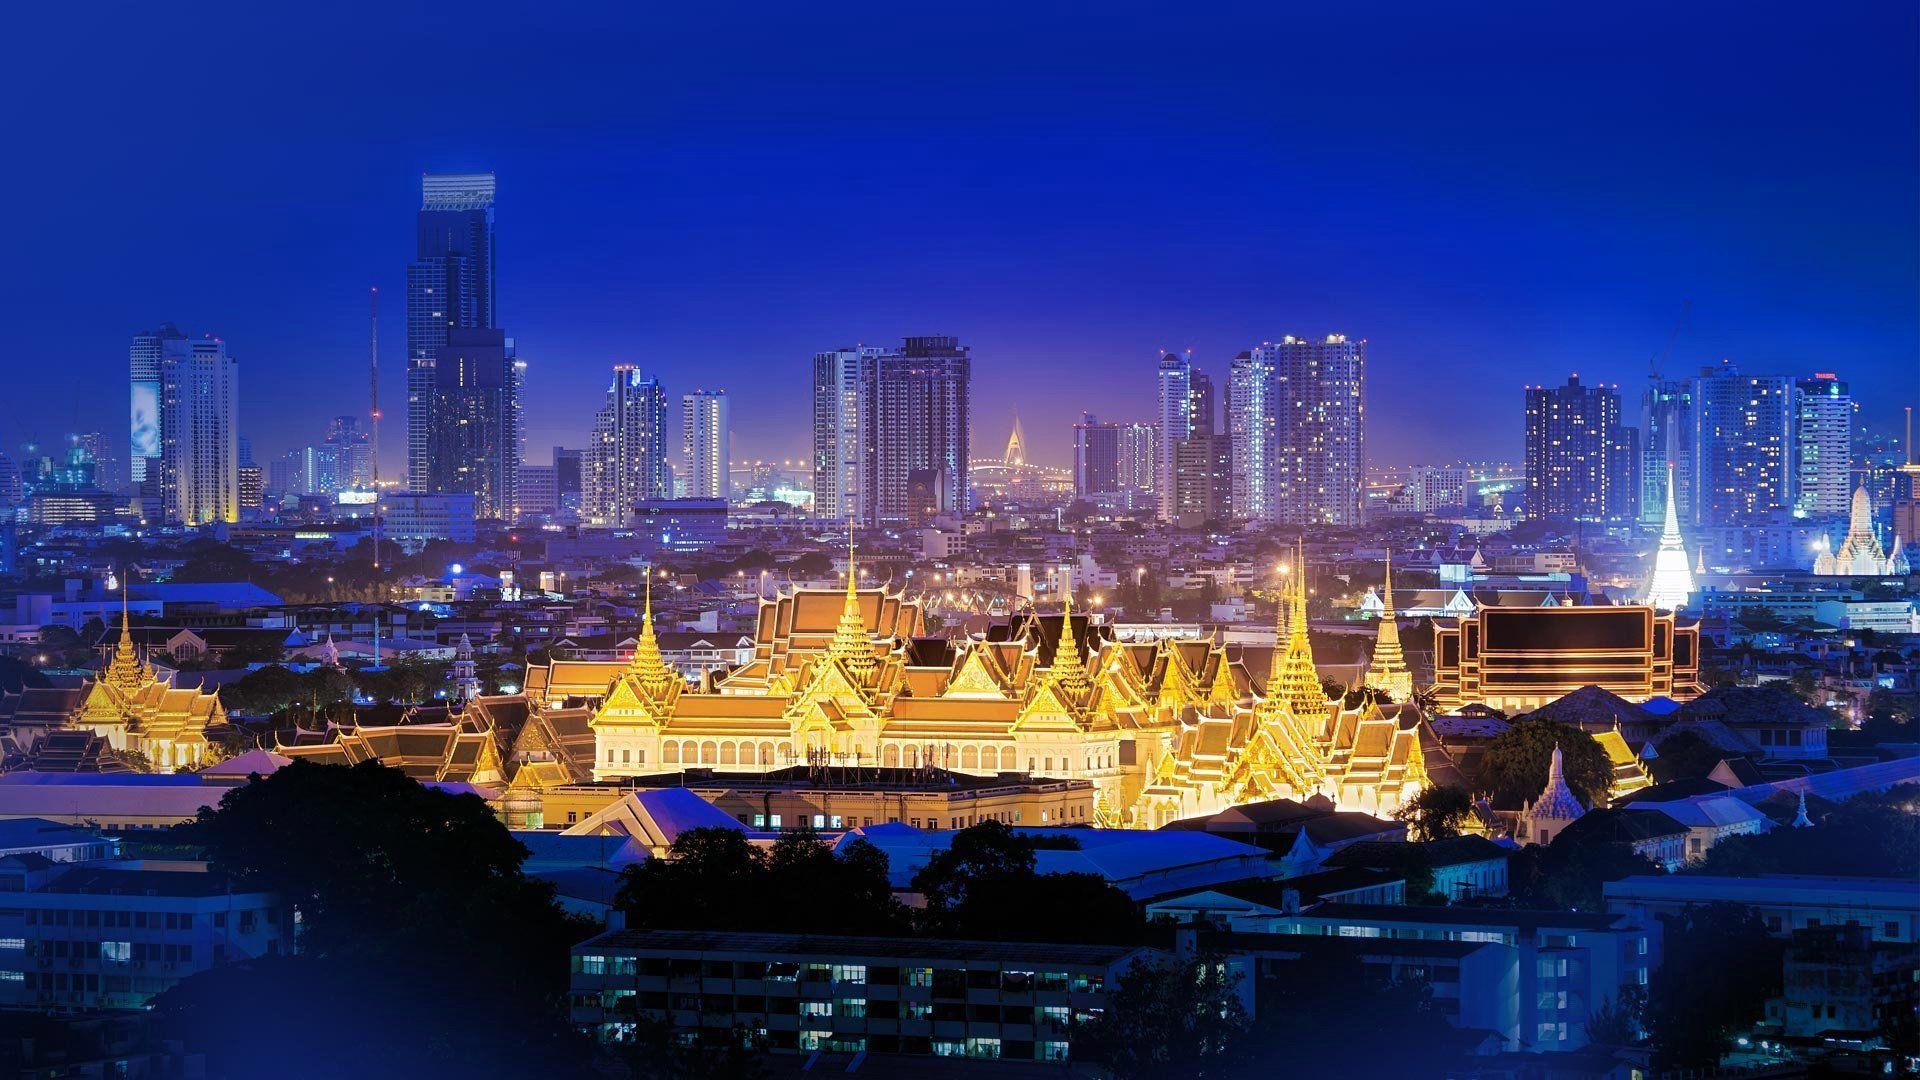  Bangkok  at Night  Wallpapers  Top Free Bangkok  at Night  